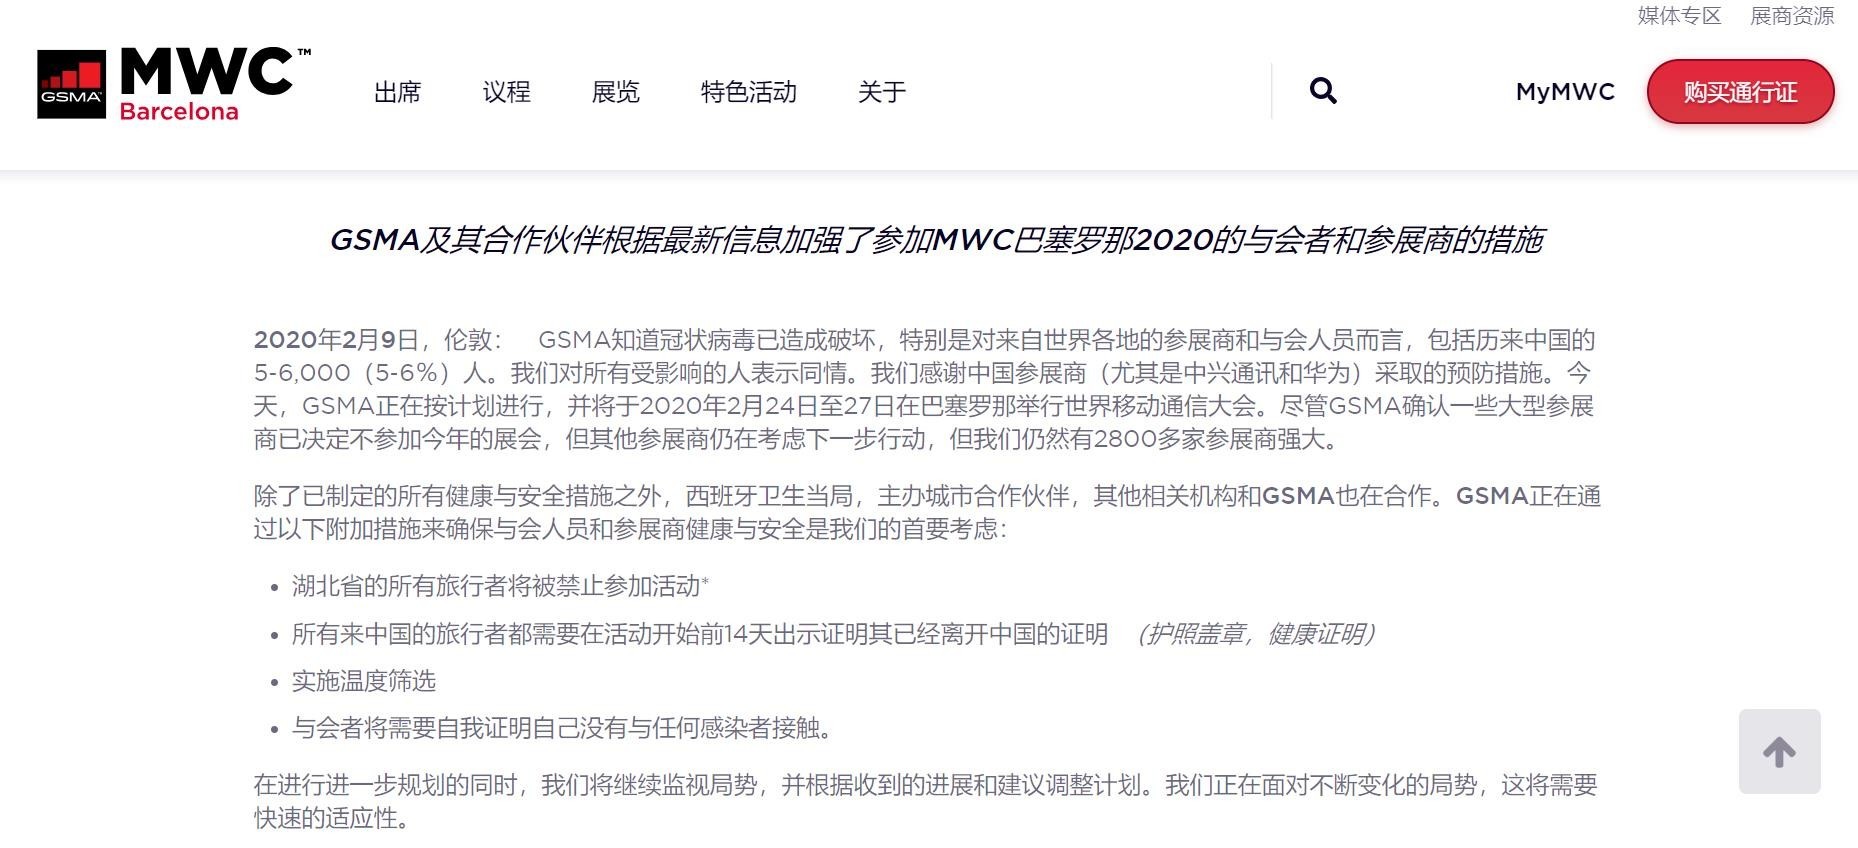 MWC2020新通告：禁止所有湖北省人员参加